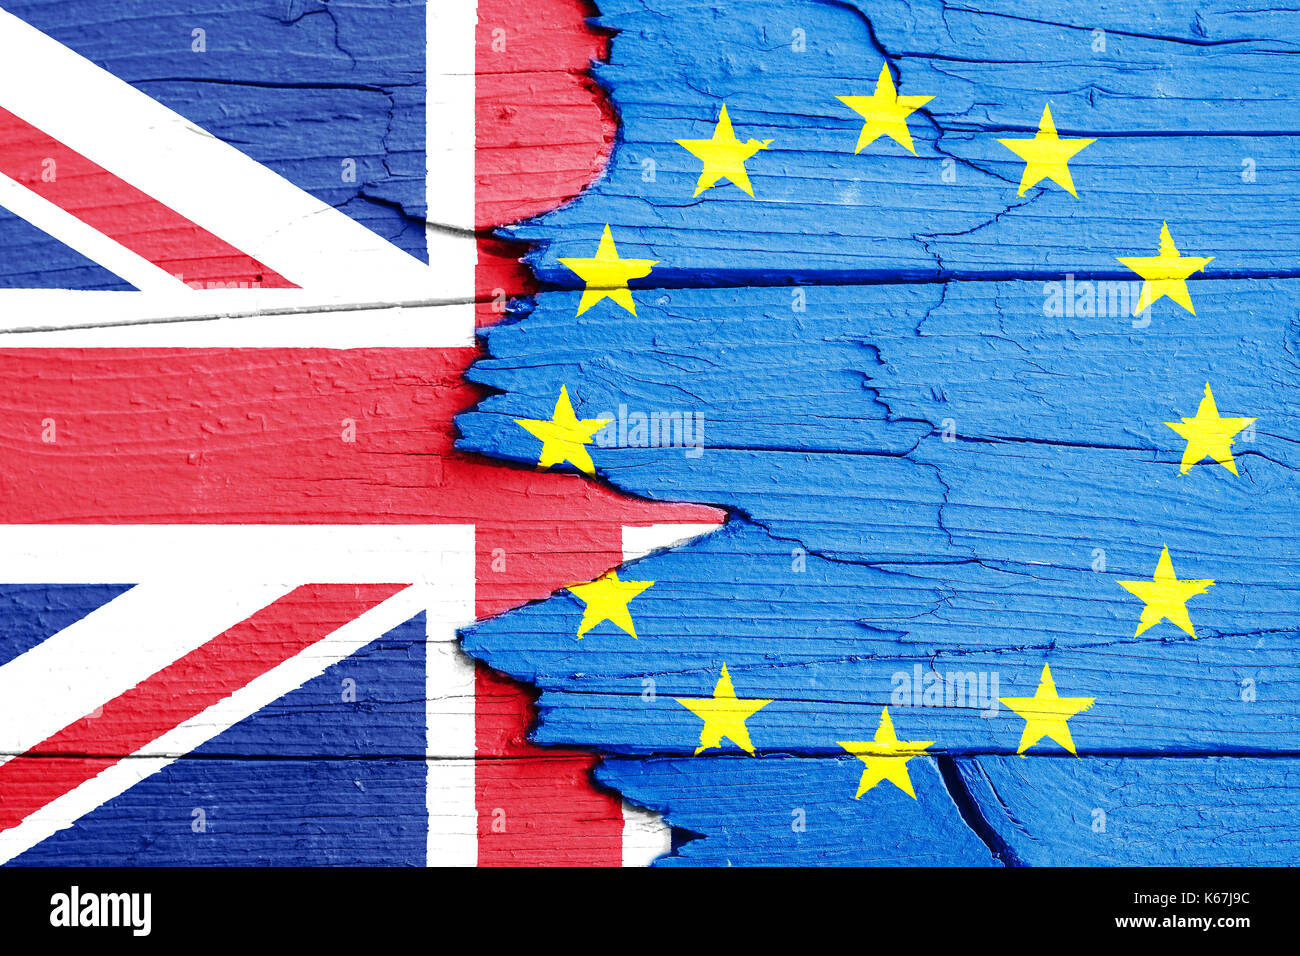 Brexit Concetto di immagine: bandiere dell'Unione europea (UE) e il Regno Unito (UK) dipinta su una rotta incrinato parete in legno. Foto Stock